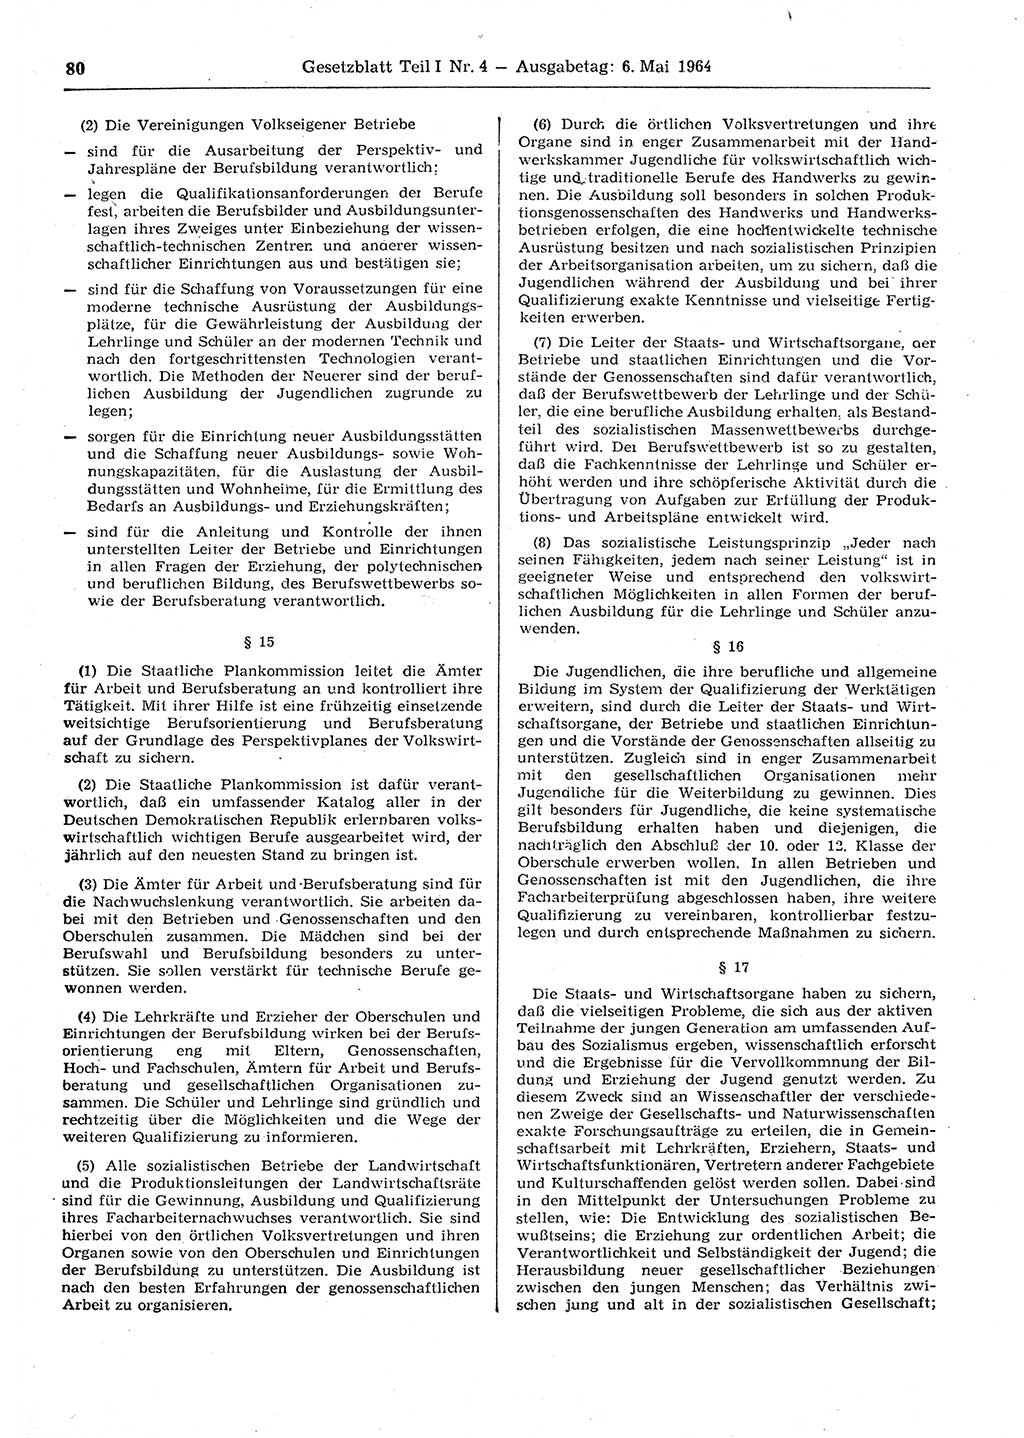 Gesetzblatt (GBl.) der Deutschen Demokratischen Republik (DDR) Teil Ⅰ 1964, Seite 80 (GBl. DDR Ⅰ 1964, S. 80)